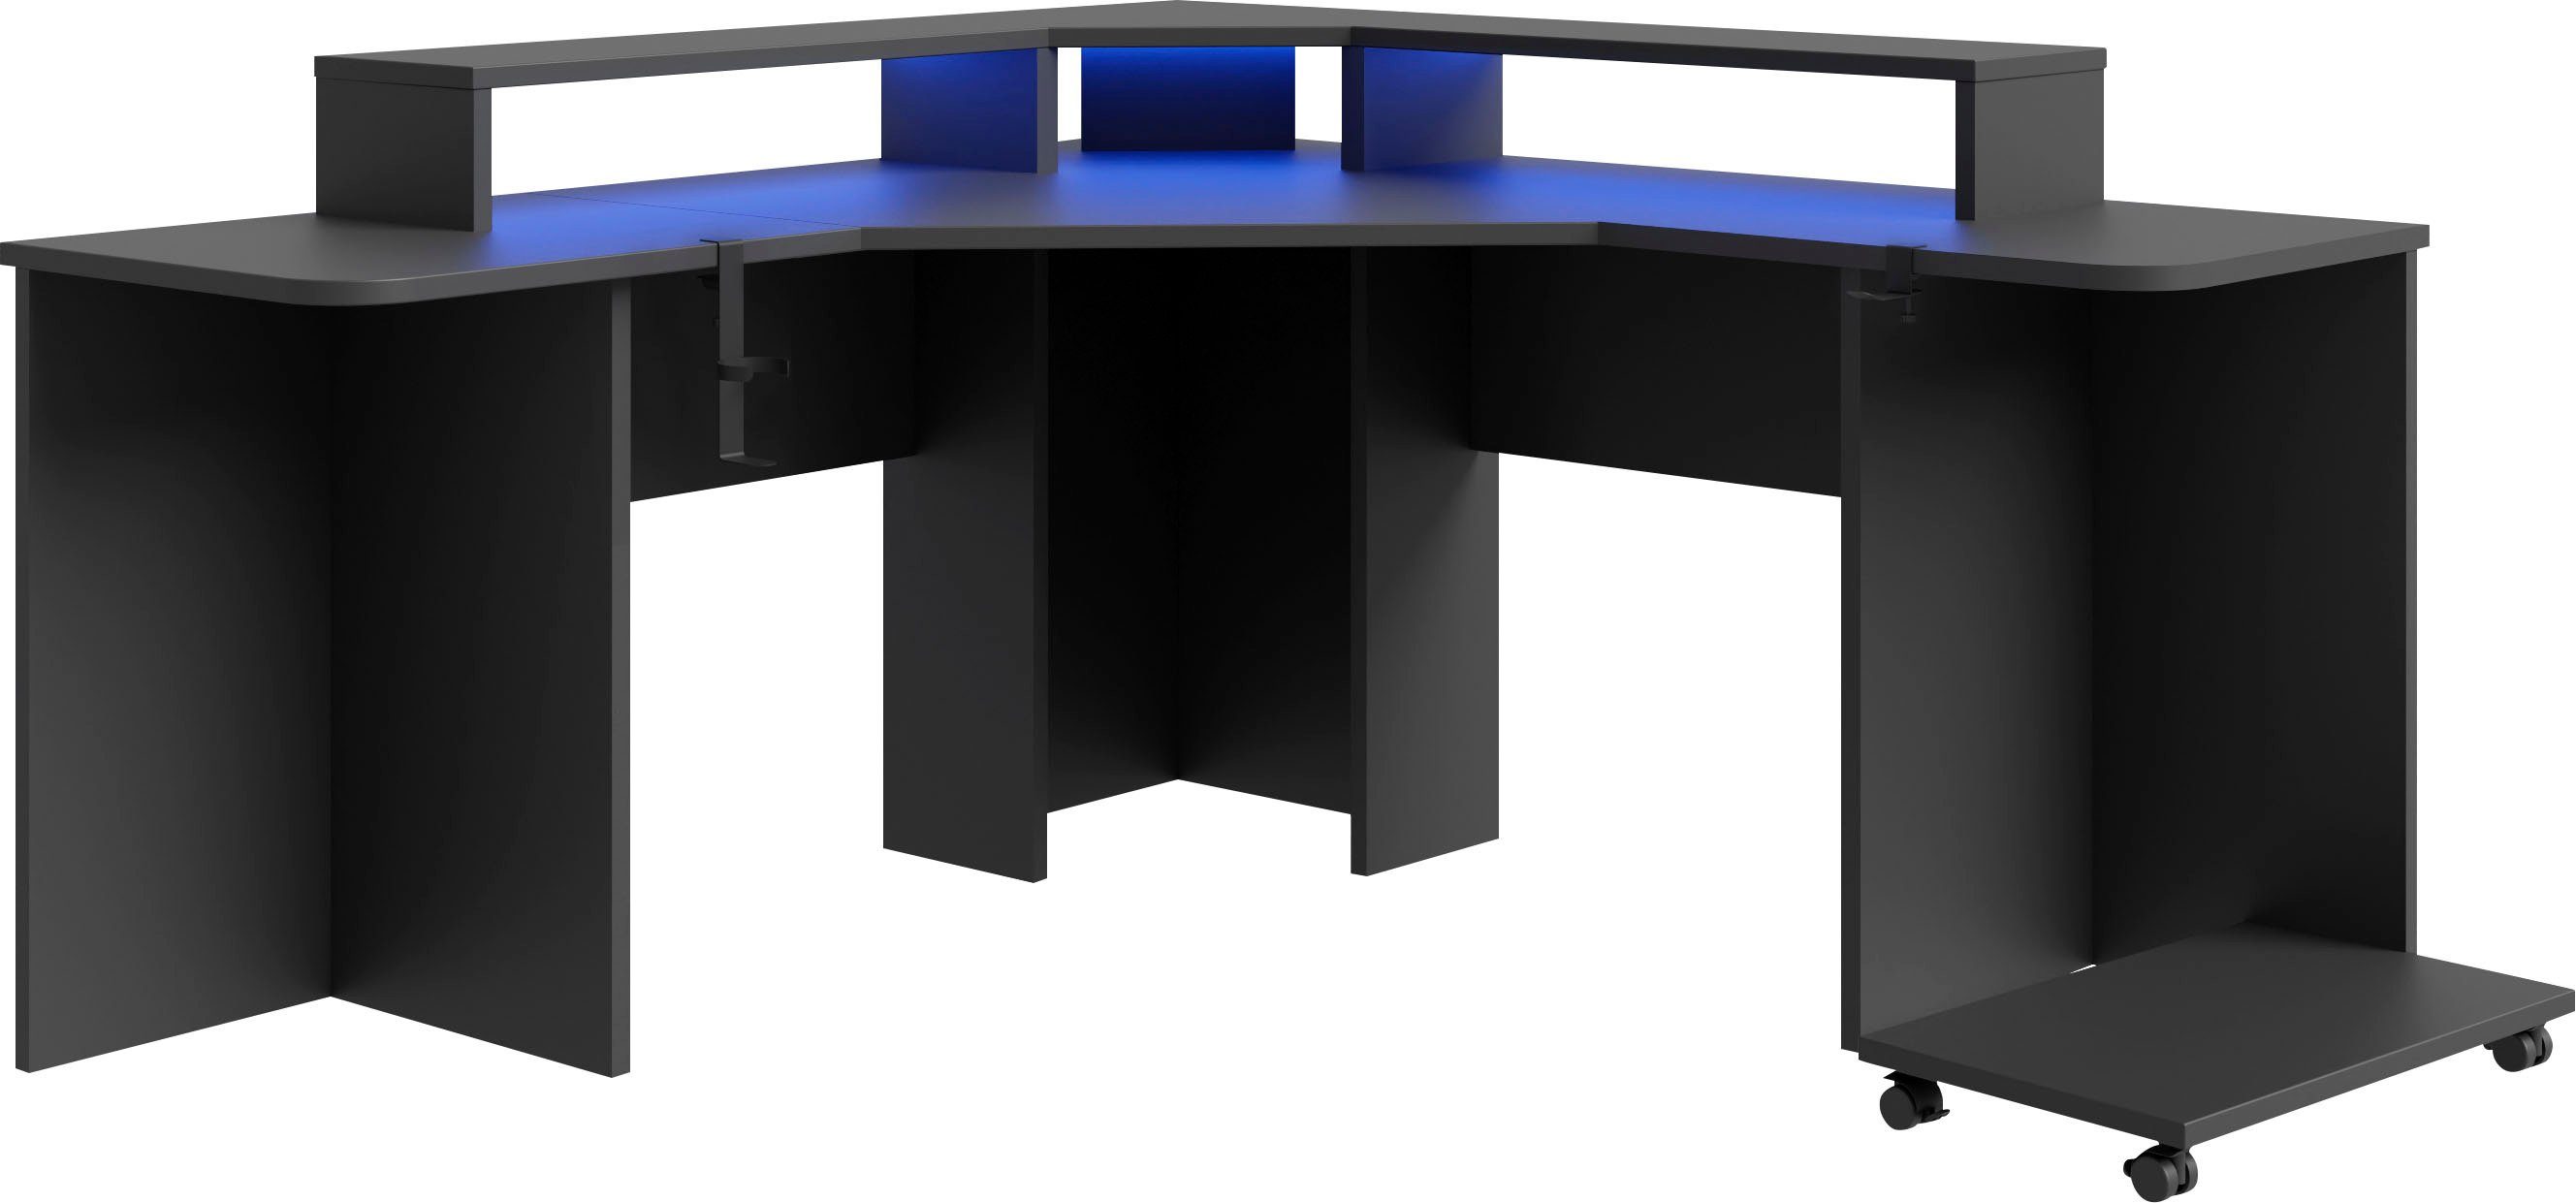 FORTE Gamingtisch Tezaur, mit RGB-Beleuchtung, Breite 160 cm, Inklusive  Beleuchtung, Getränkehalter und Headsethalter